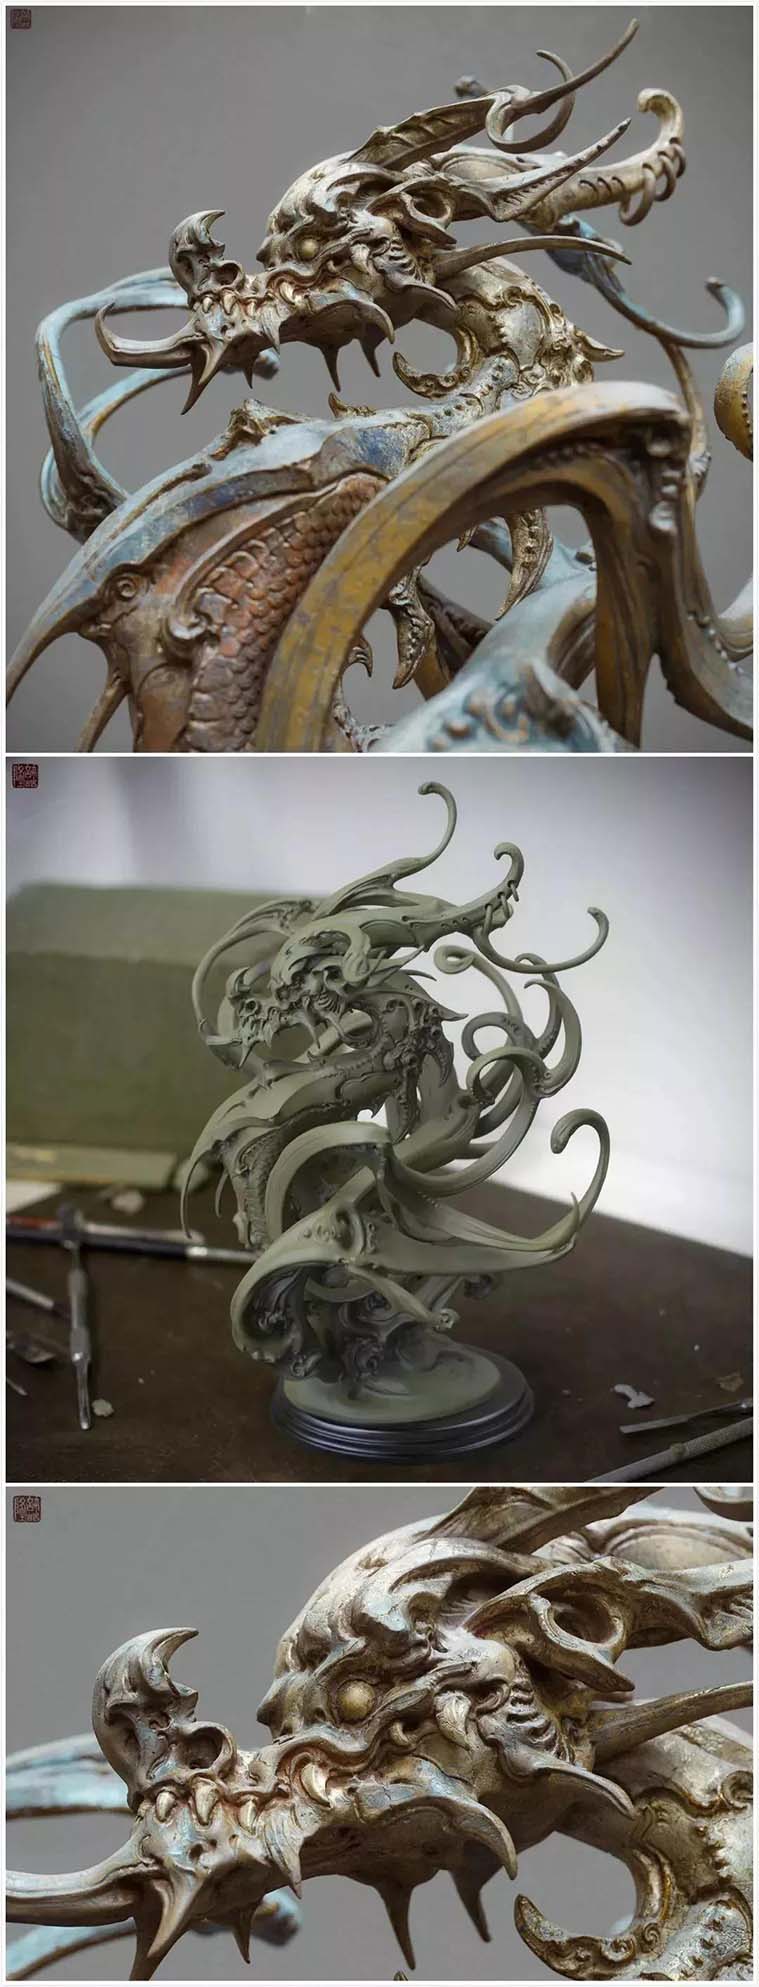 中国艺术家许喆隆  作品《龙》